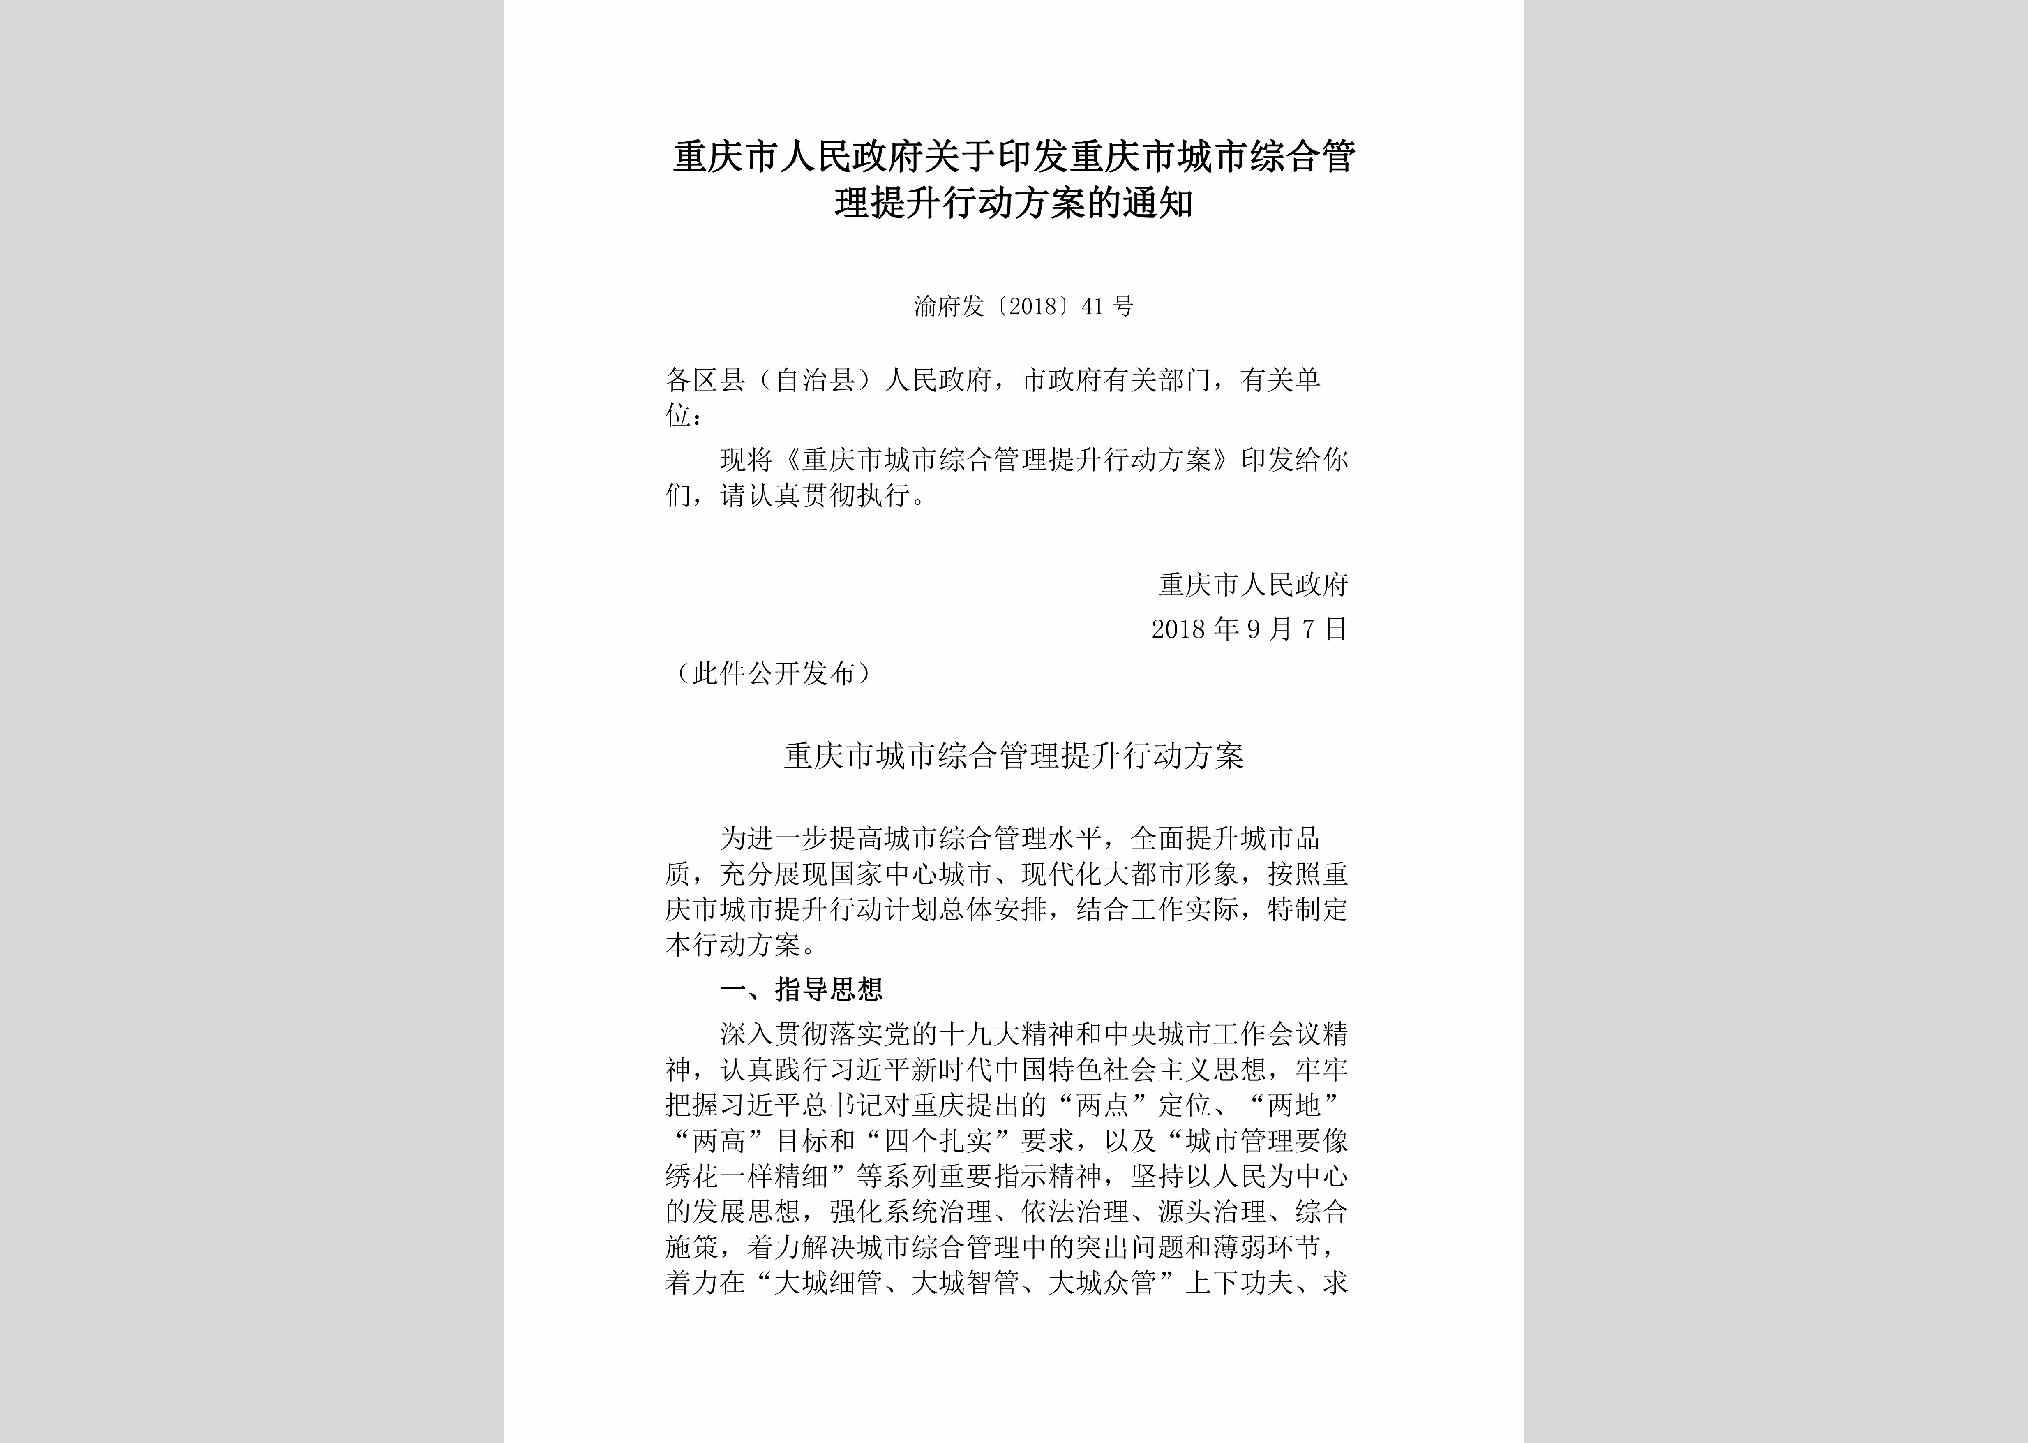 渝府发[2018]41号：重庆市人民政府关于印发重庆市城市综合管理提升行动方案的通知